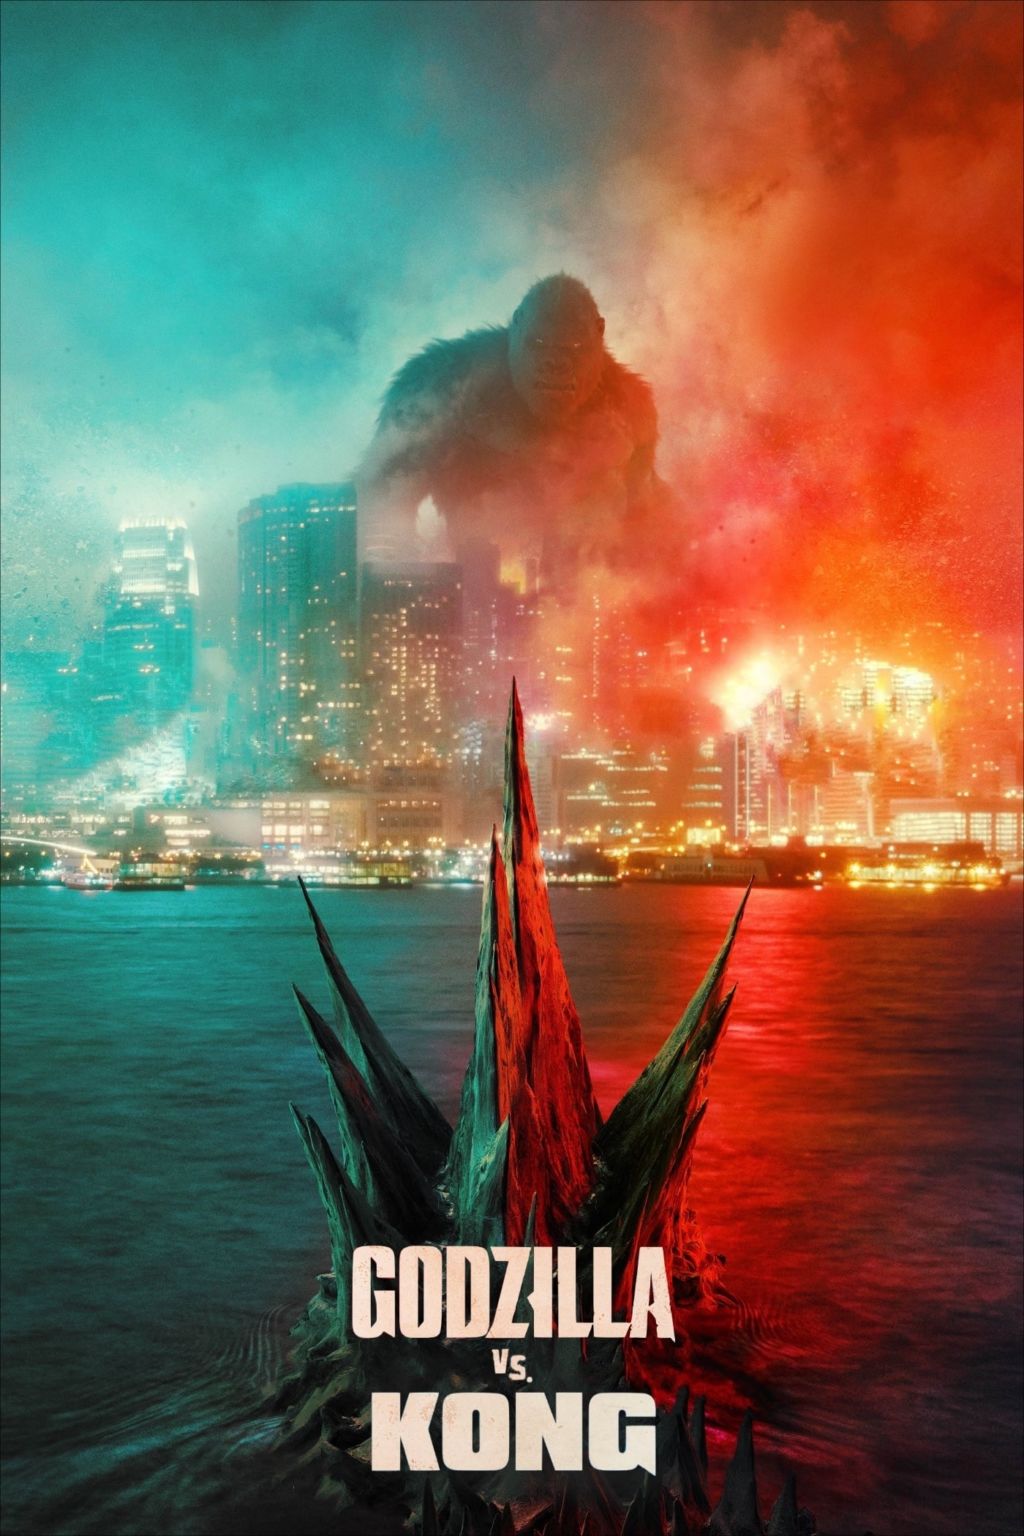 ডাউনলোড করে নিন Godzilla vs. Kong অরিজিনাল হিন্দি ডাব